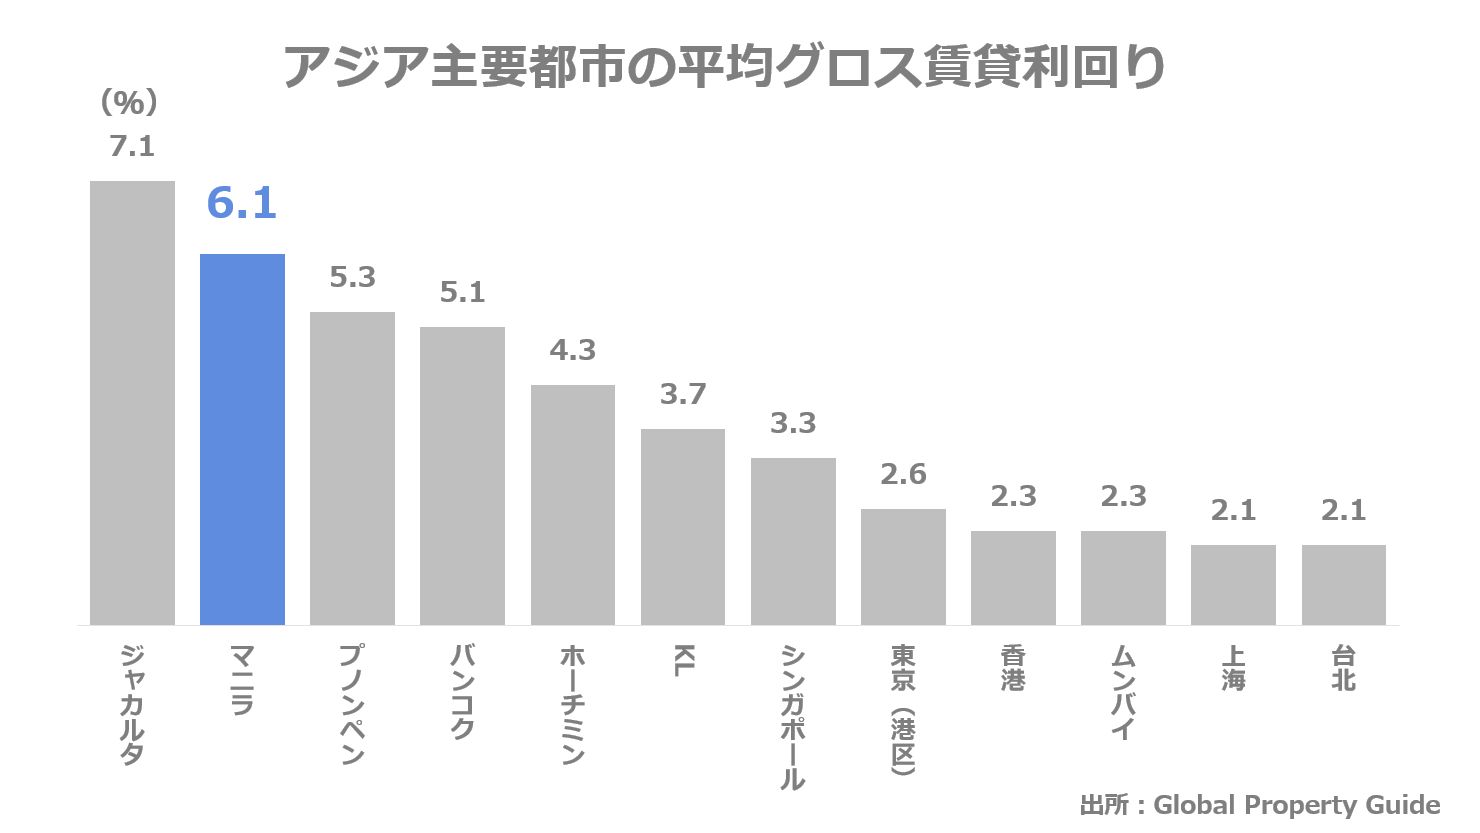 アジア主要都市の平均グロス賃貸利回りの比較